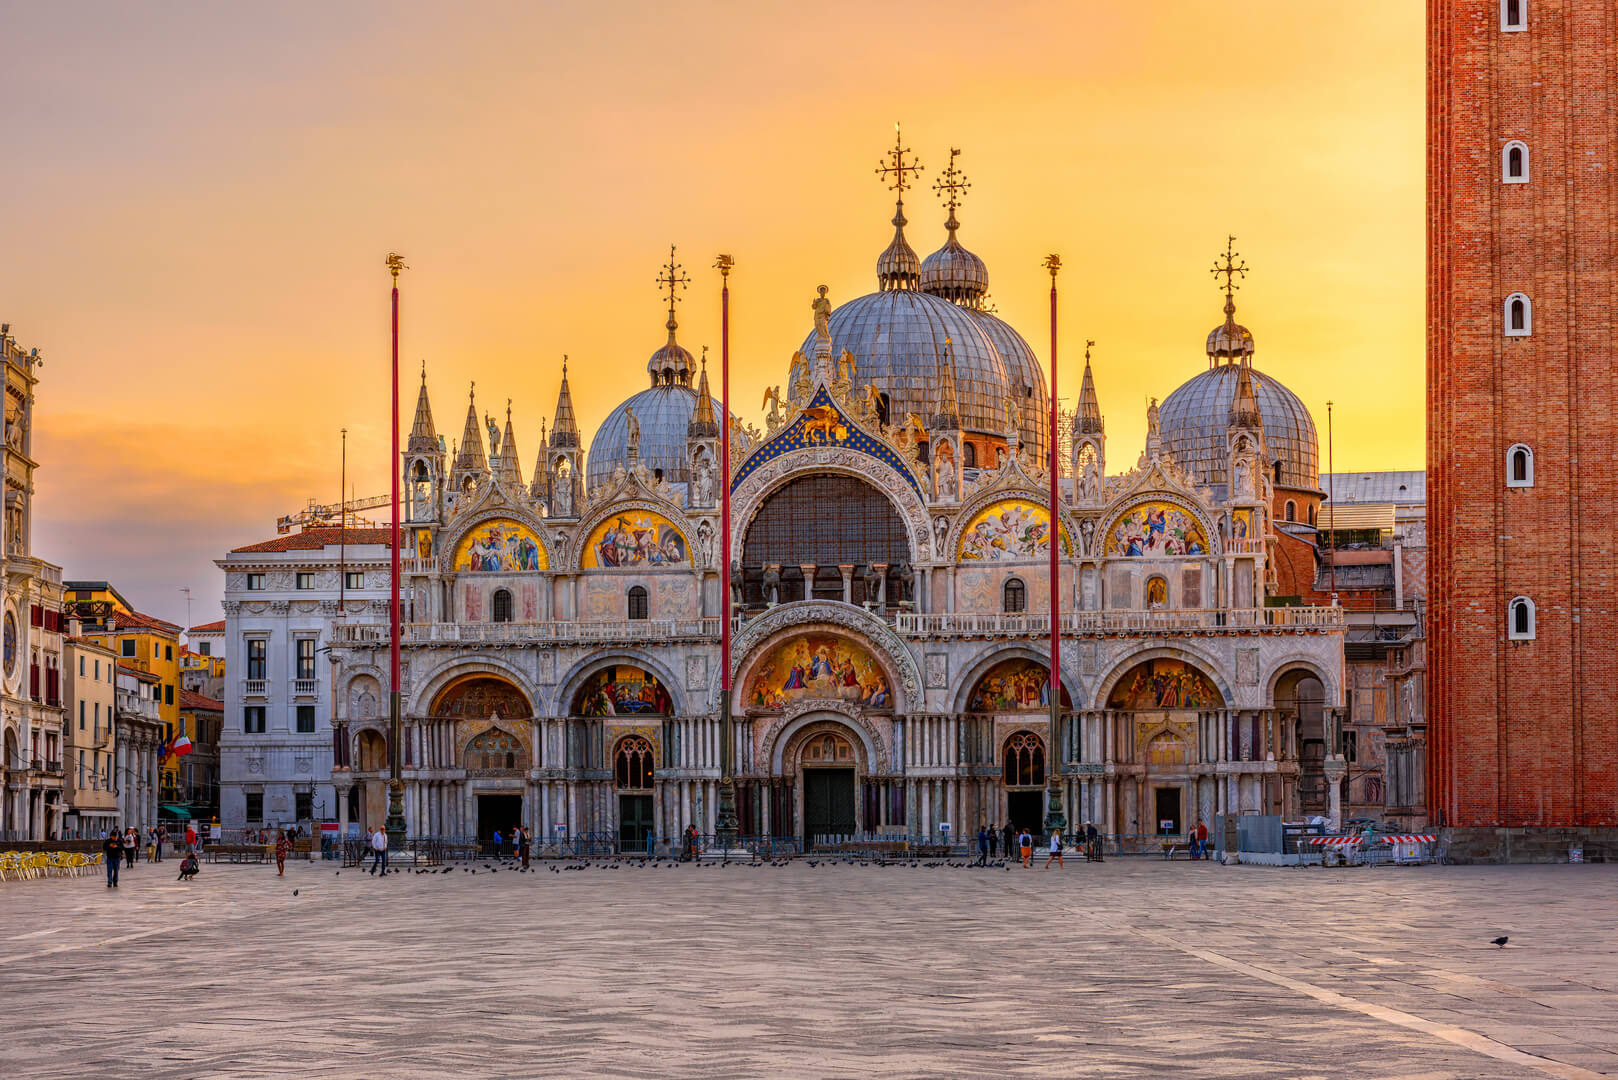 Vue de la basilique de Saint-Marc et de la place Saint-Marc à Venise, en Italie. Architecture et monuments de Venise. Paysage urbain de Venise au lever du soleil.